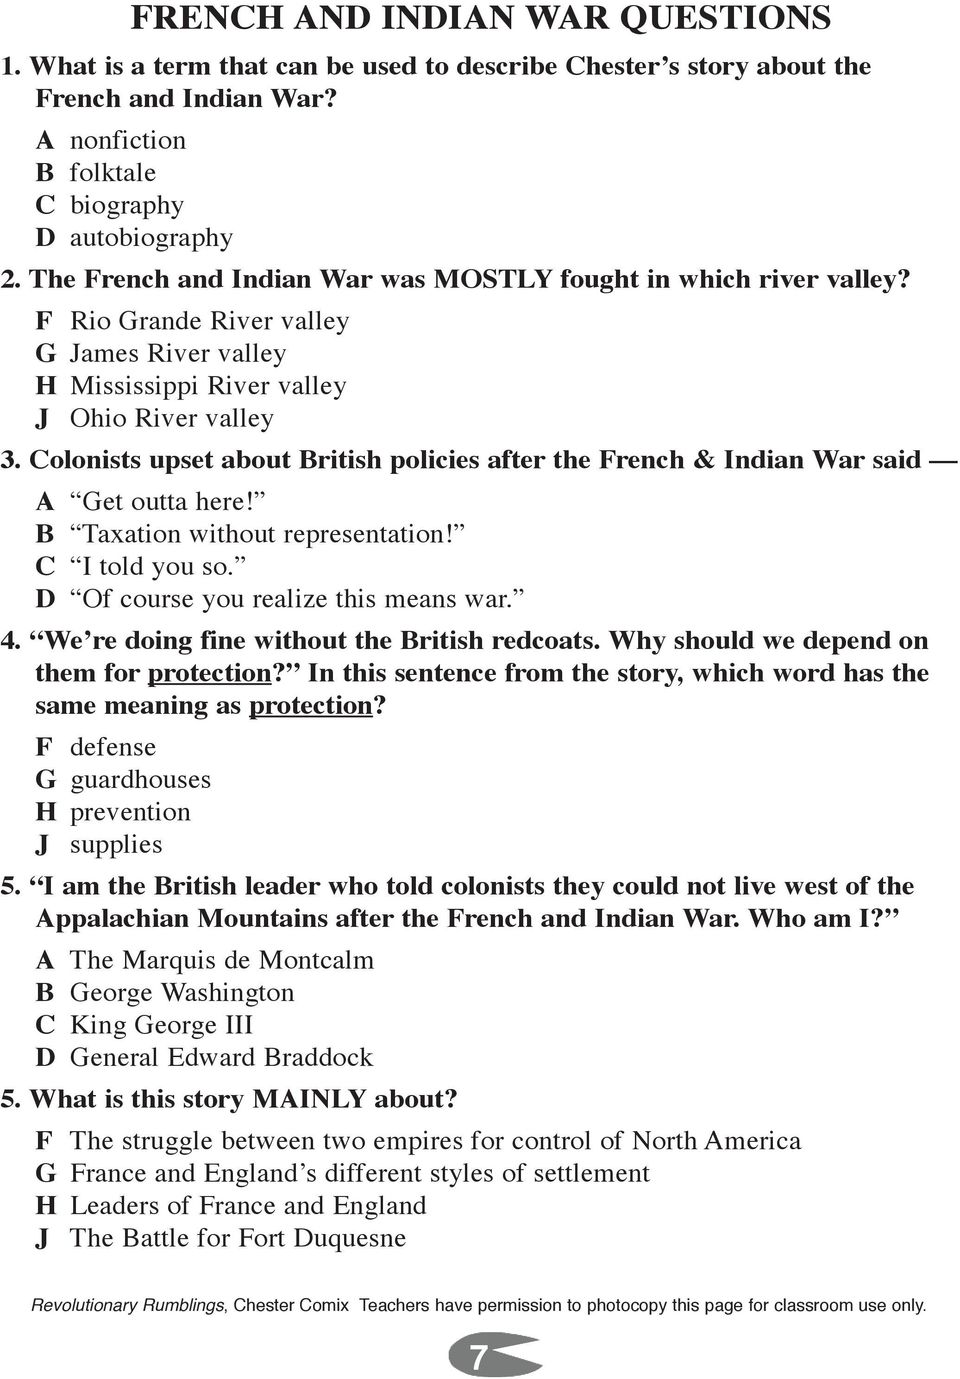 French & Indian War * Boston Tea Party - PDF Free Download Regarding French And Indian War Worksheet